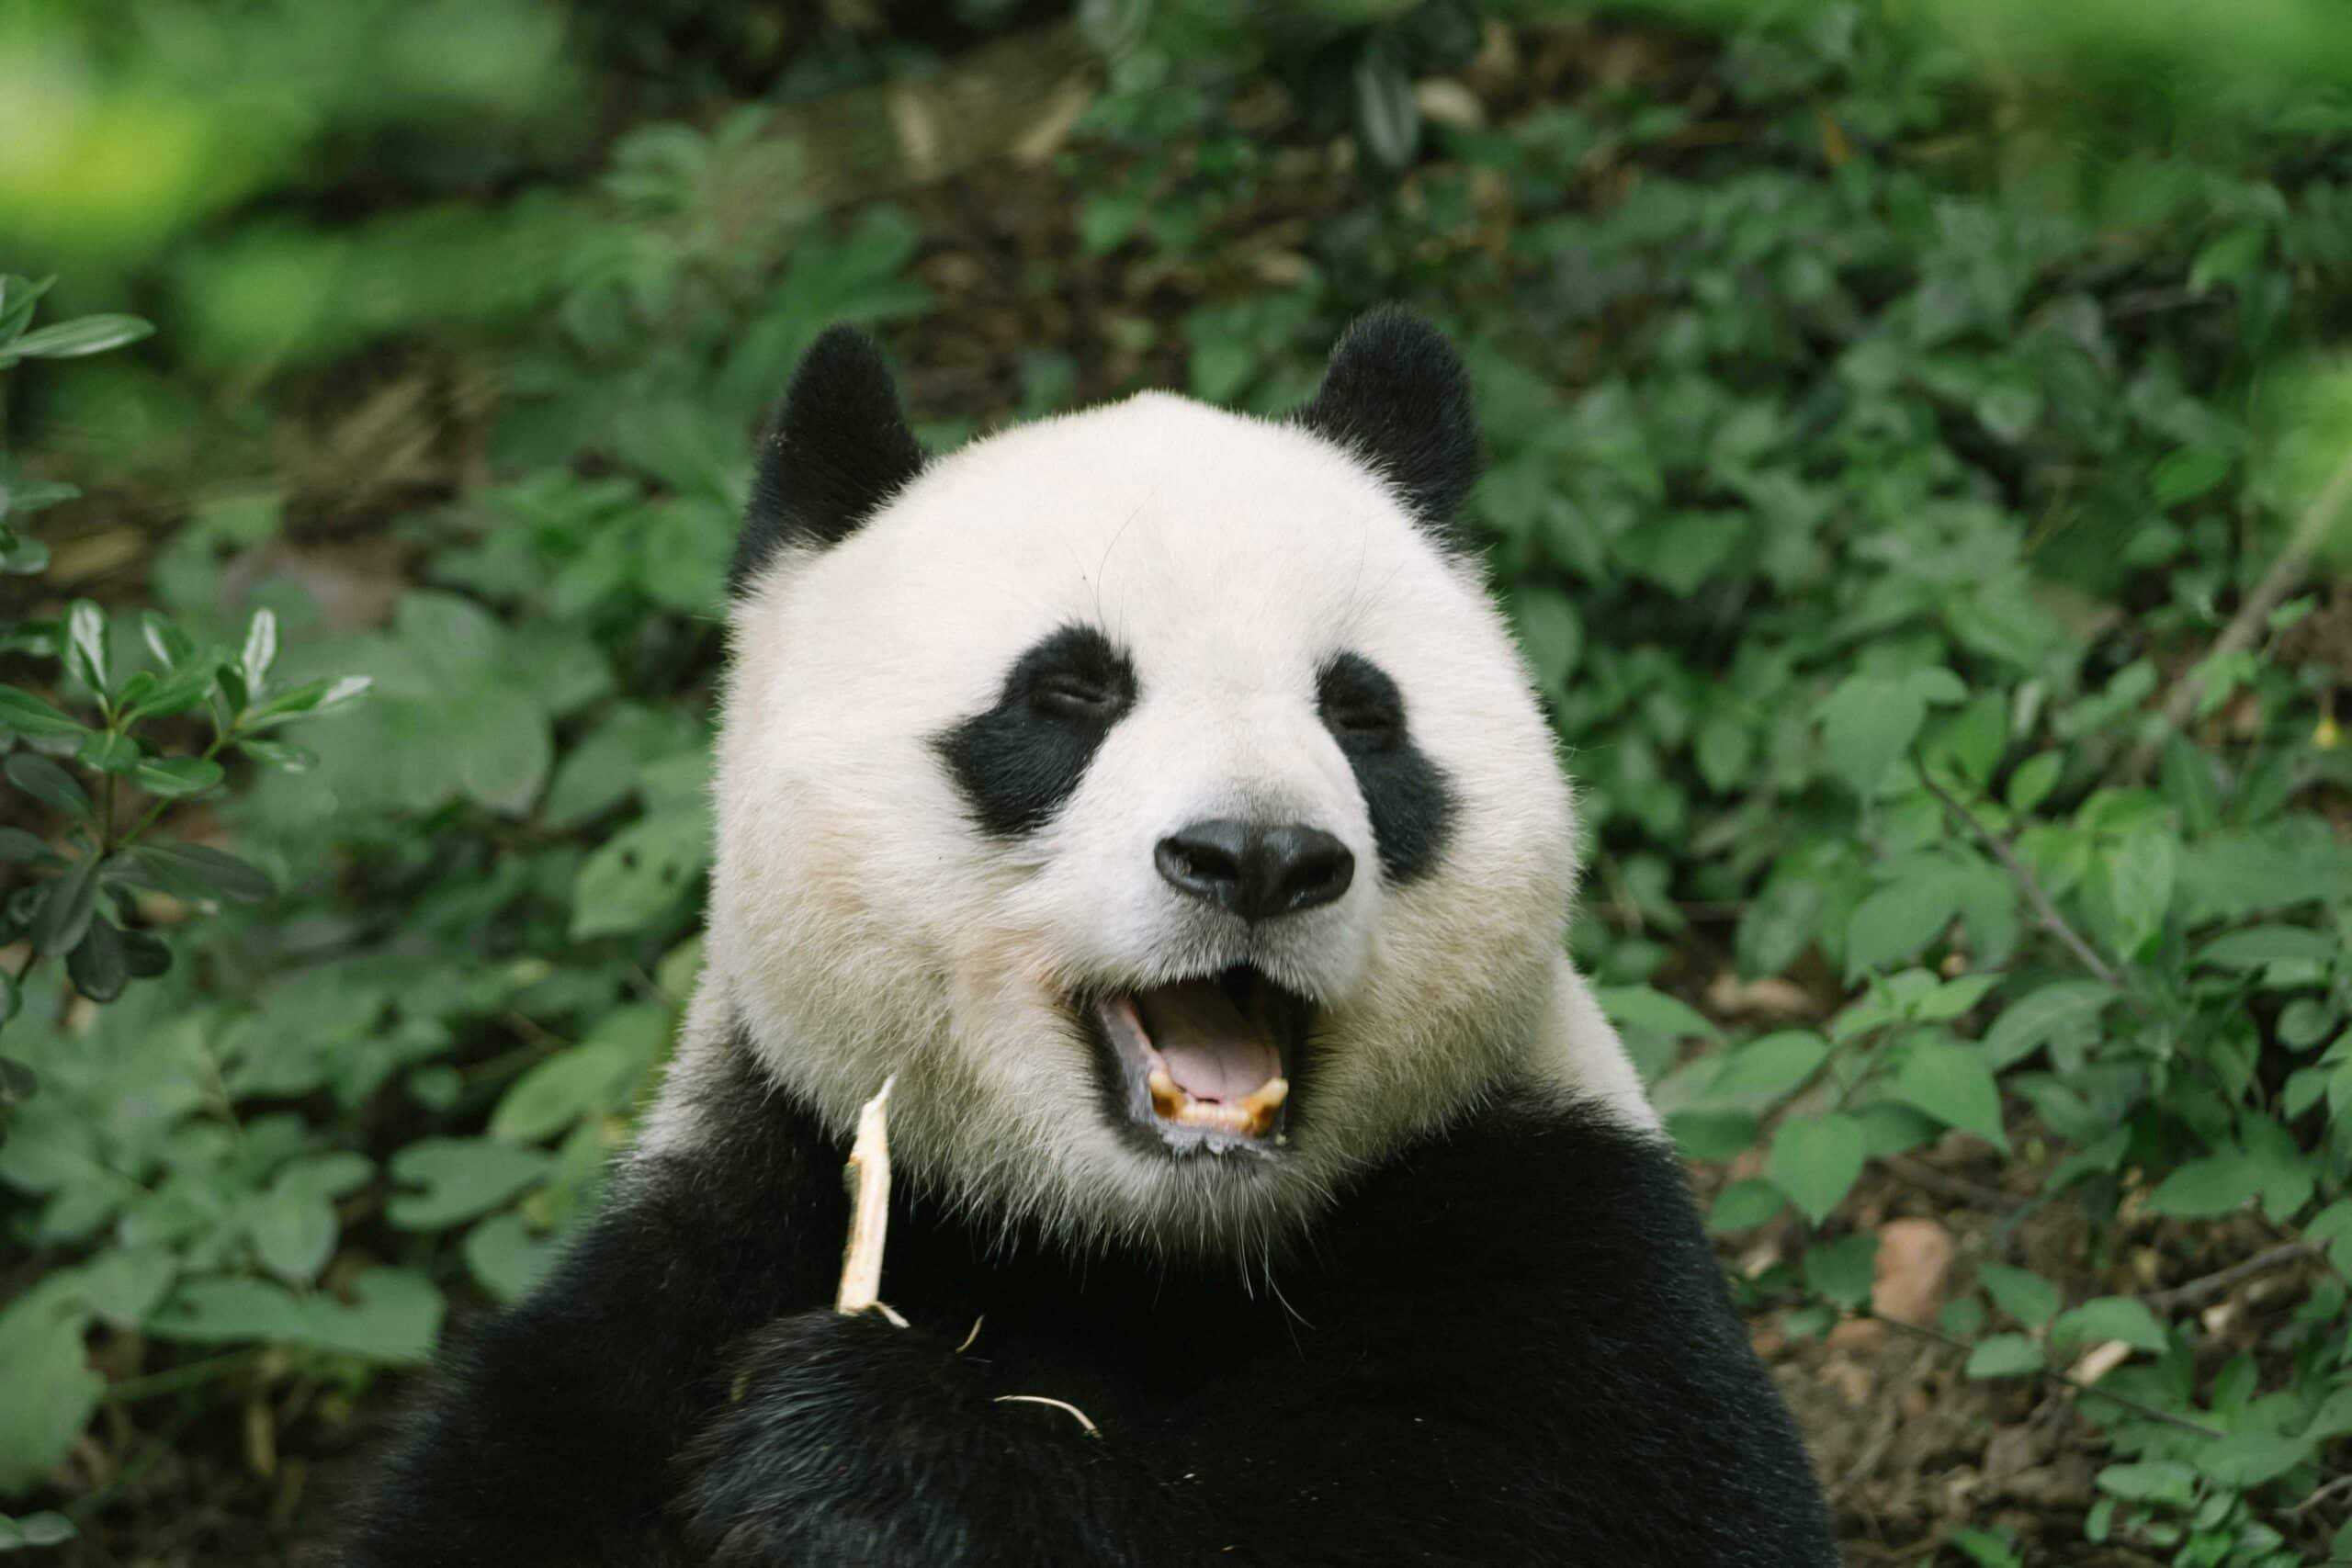 Sneezing Panda Cub